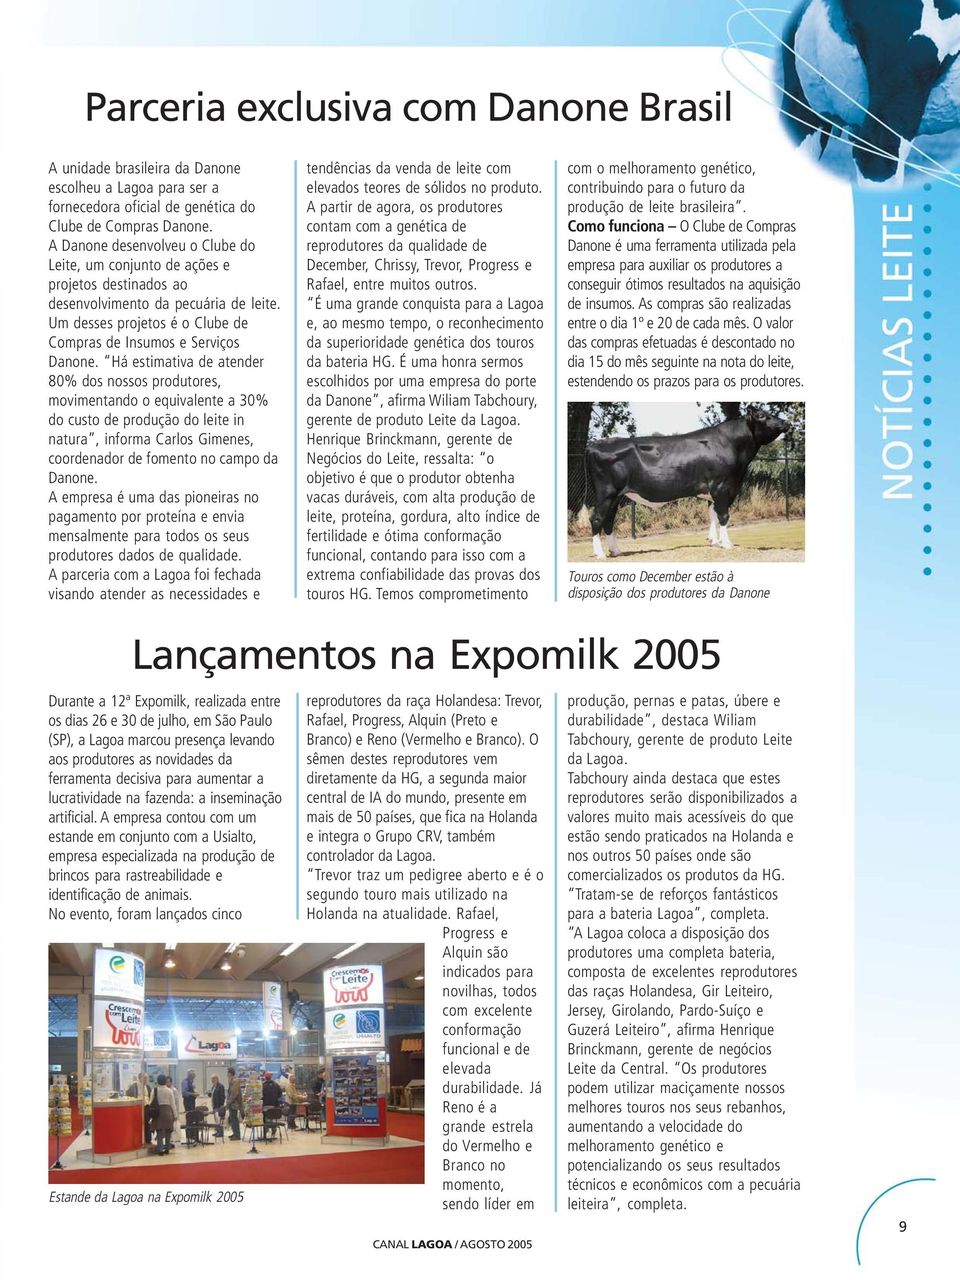 Há estimativa de atender 80% dos nossos produtores, movimentando o equivalente a 30% do custo de produção do leite in natura, informa Carlos Gimenes, coordenador de fomento no campo da Danone.